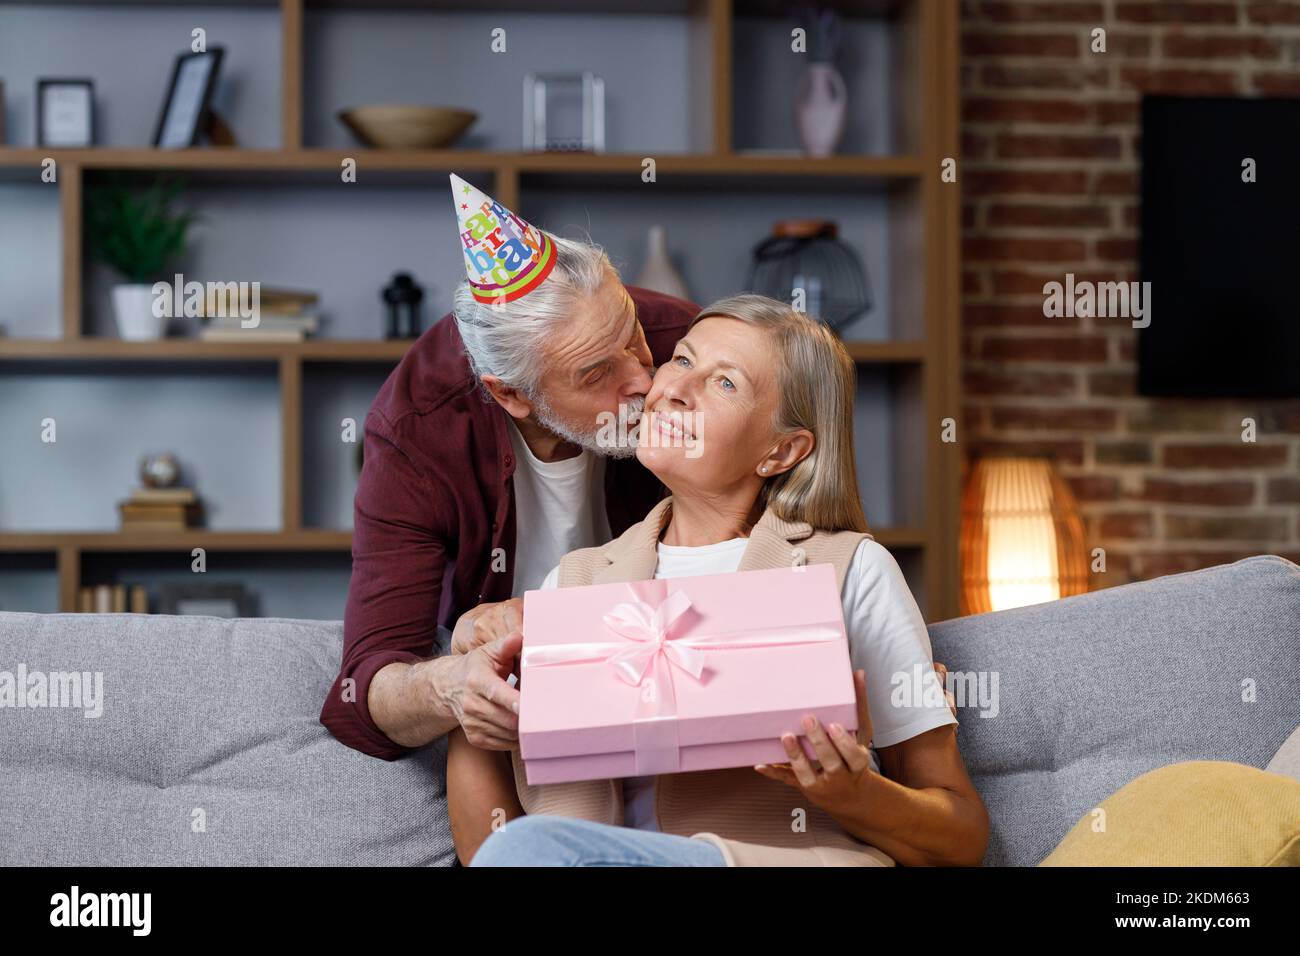 Fürsorglicher alter Ehemann, der aufgeregt reife Frau ein romantisches Geburtstagsgeschenk gibt, liebevoller älterer Mann, eine glückliche Frau mittleren Alters, eine rosa Schachtel, einen Kuss Stockfoto